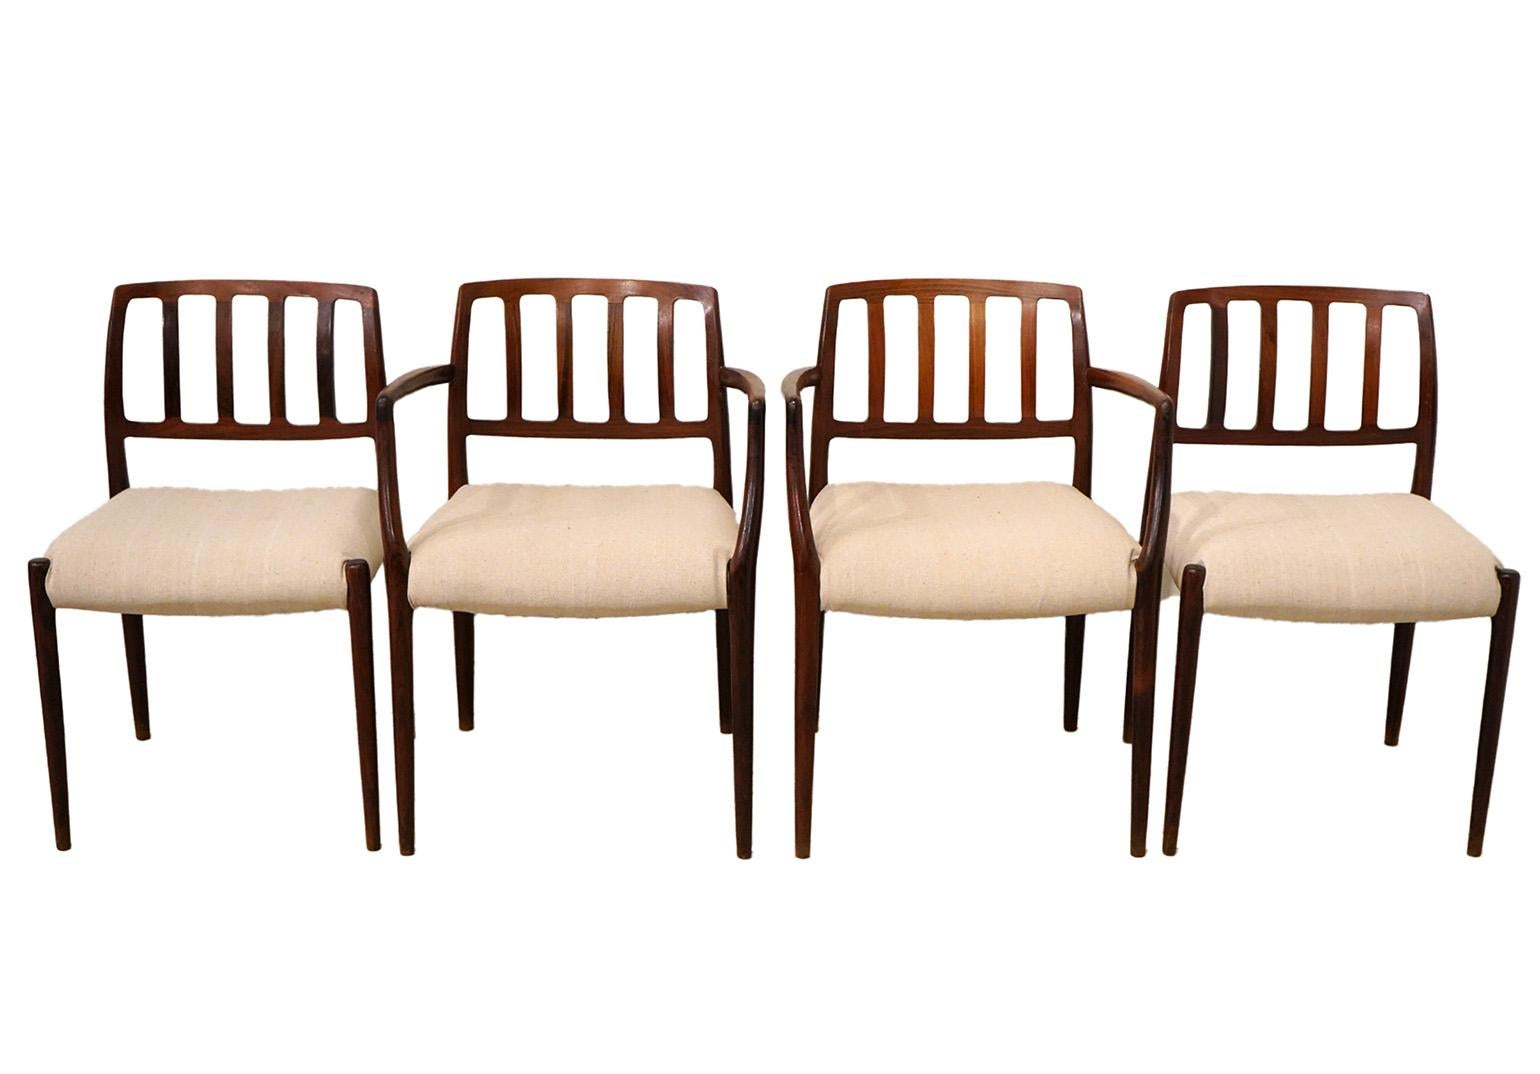 Satz von 4 Niels Moller Esstischstühlen. Das Set enthält 2 Sessel und 2 Beistellstühle. Neu gepolstert und in gutem Zustand. Dänische Moderne der 1970er Jahre.
